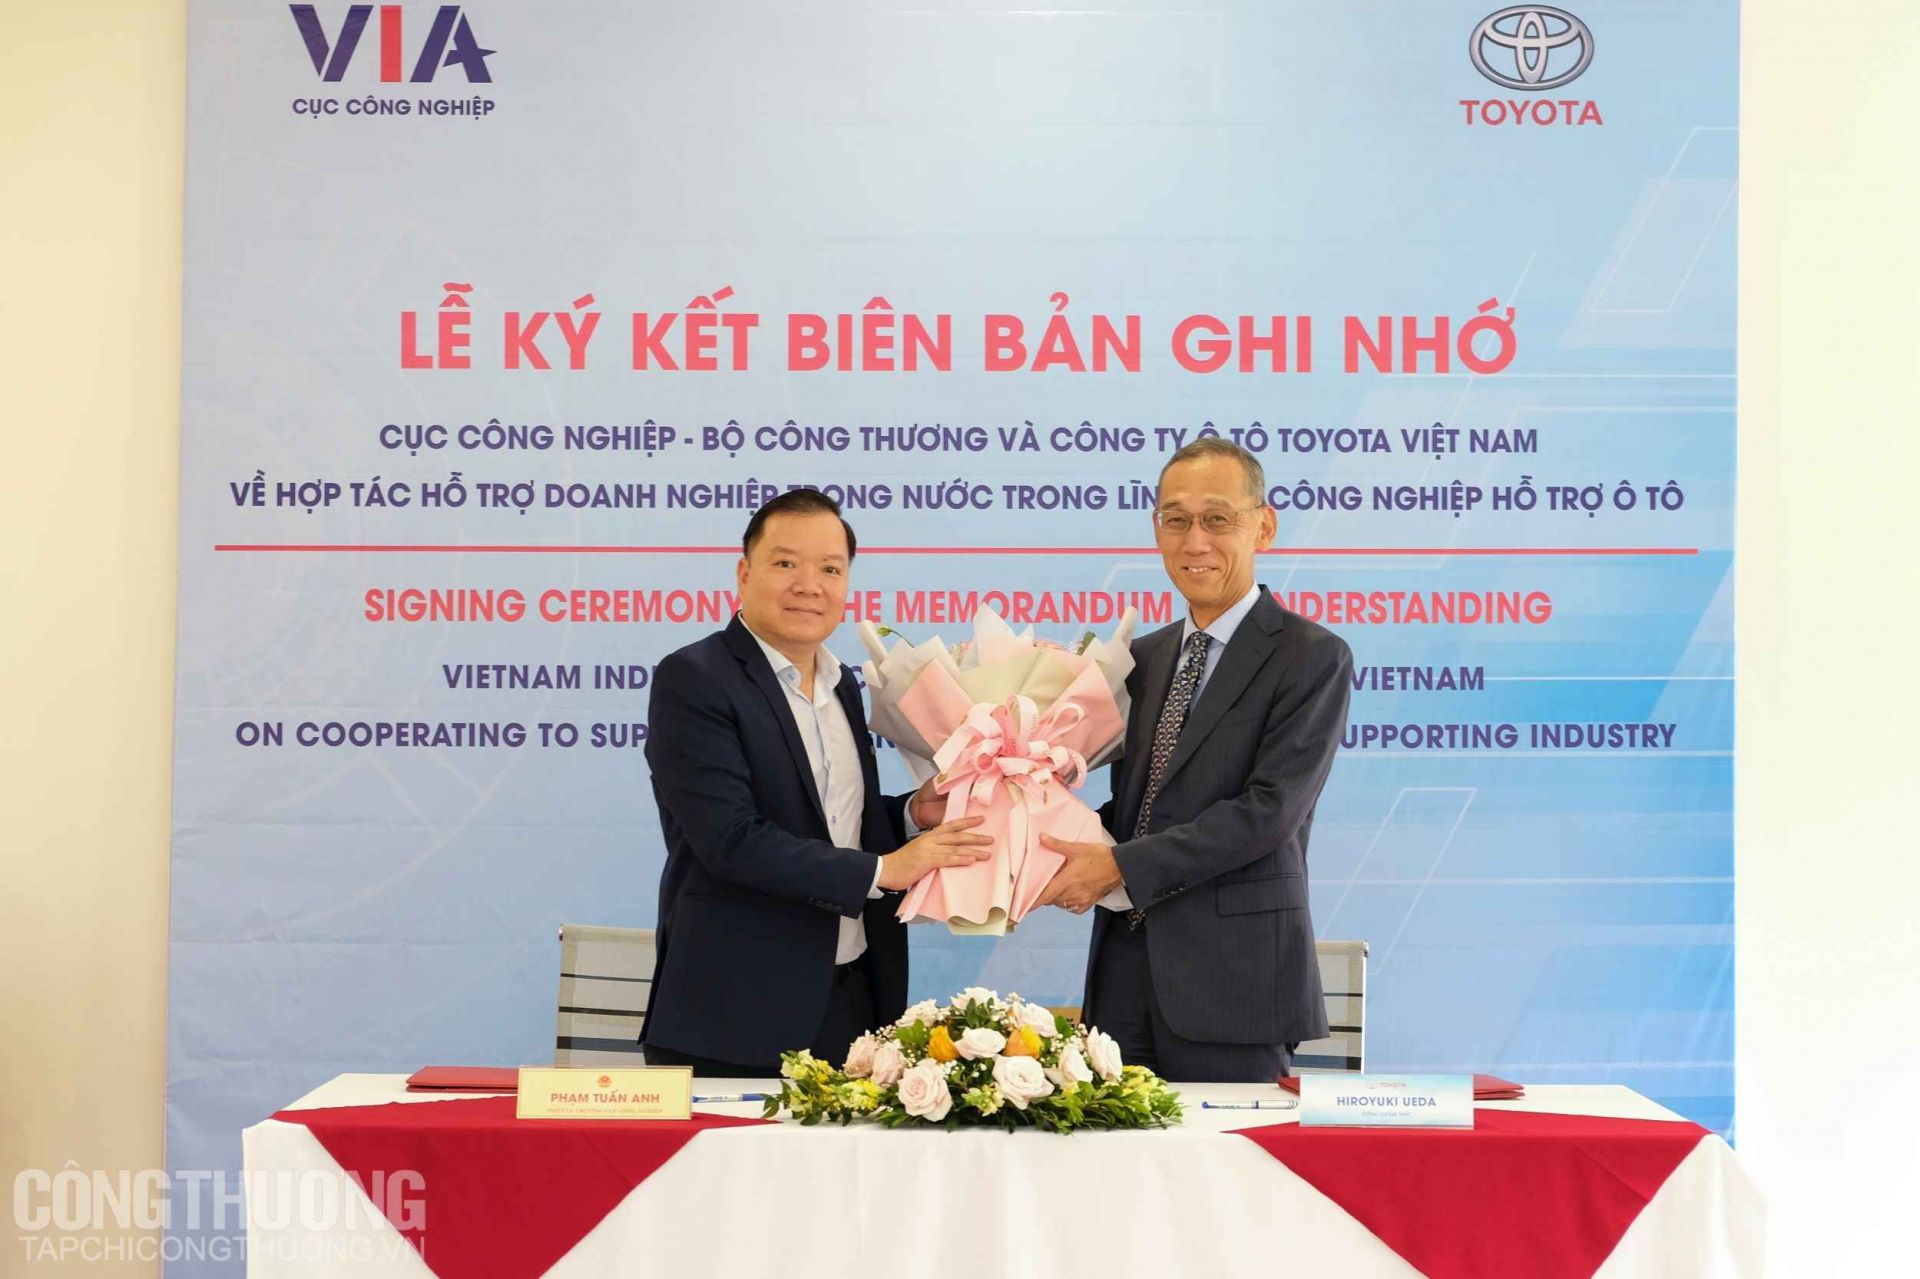 Cục Công nghiệp, Bộ Công Thương và Công ty Ô tô Toyota Việt Nam phối hợp tổ chức Lễ ký kết Biên bản ghi nhớ về việc hợp tác hỗ trợ doanh nghiệp trong nước trong lĩnh vực công nghiệp hỗ trợ ô tô.